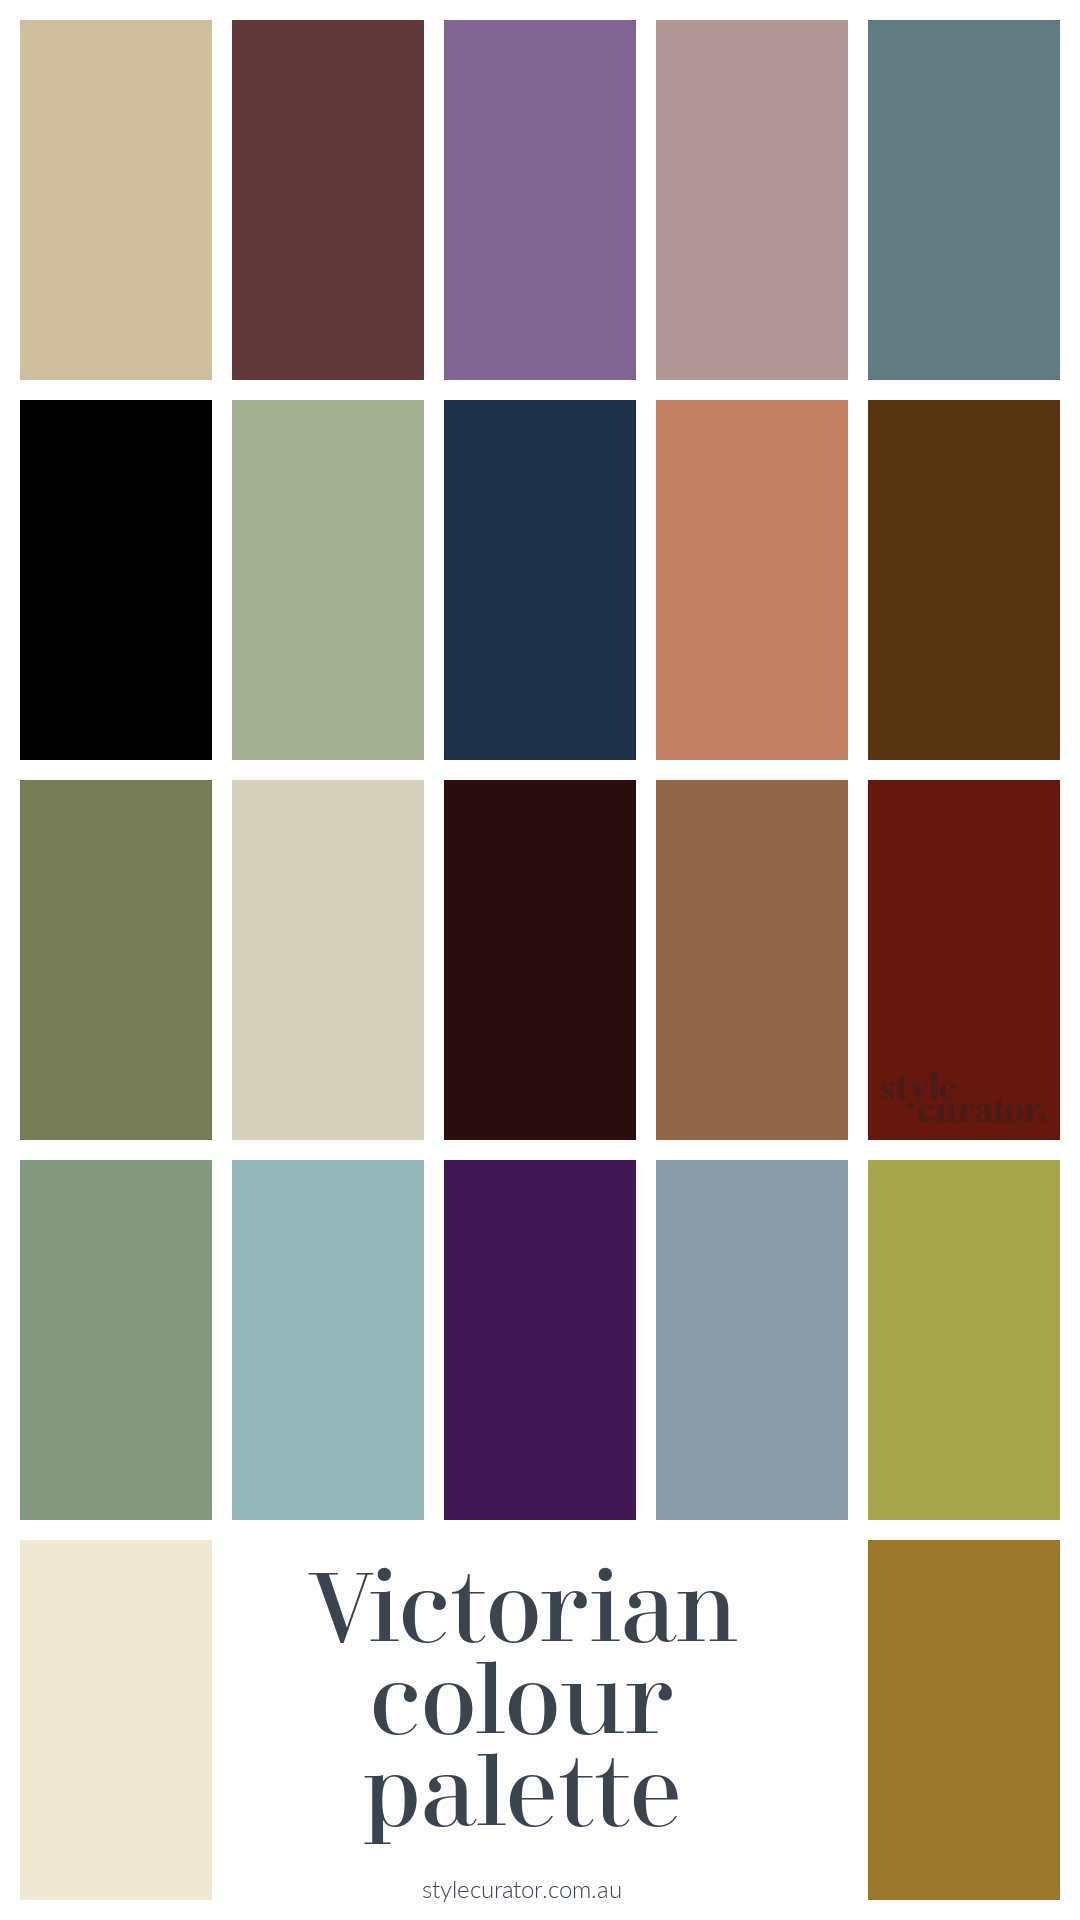 Victorian colour palette